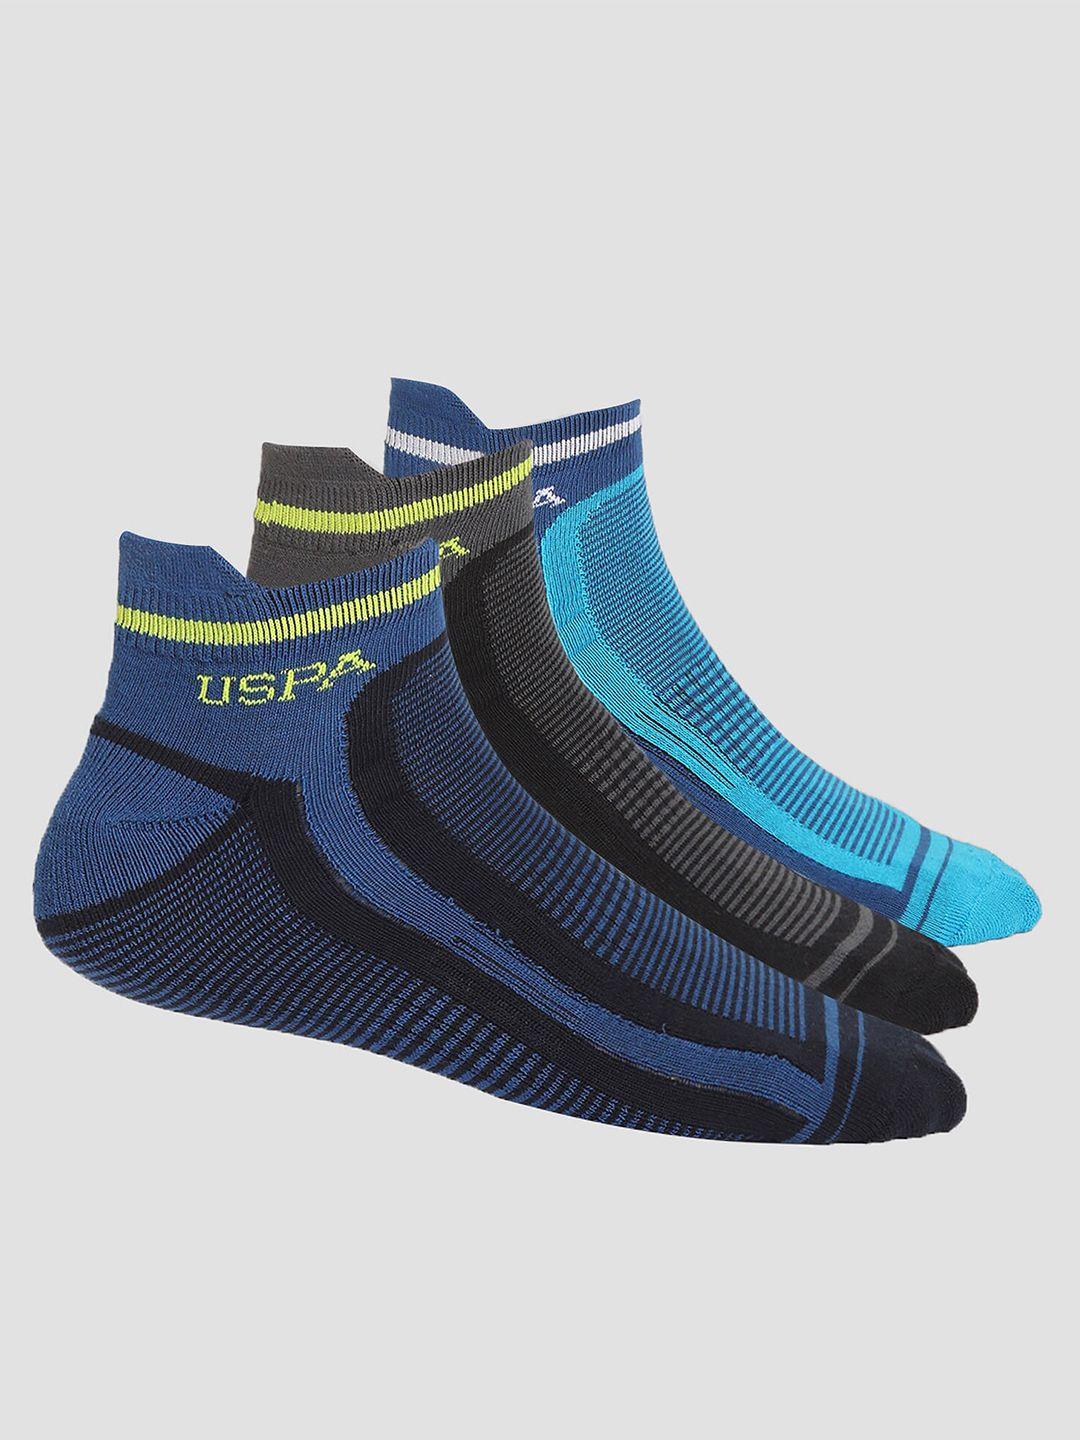 u.s.-polo-assn.-men-pack-of-3-patterned-ankle-length-socks